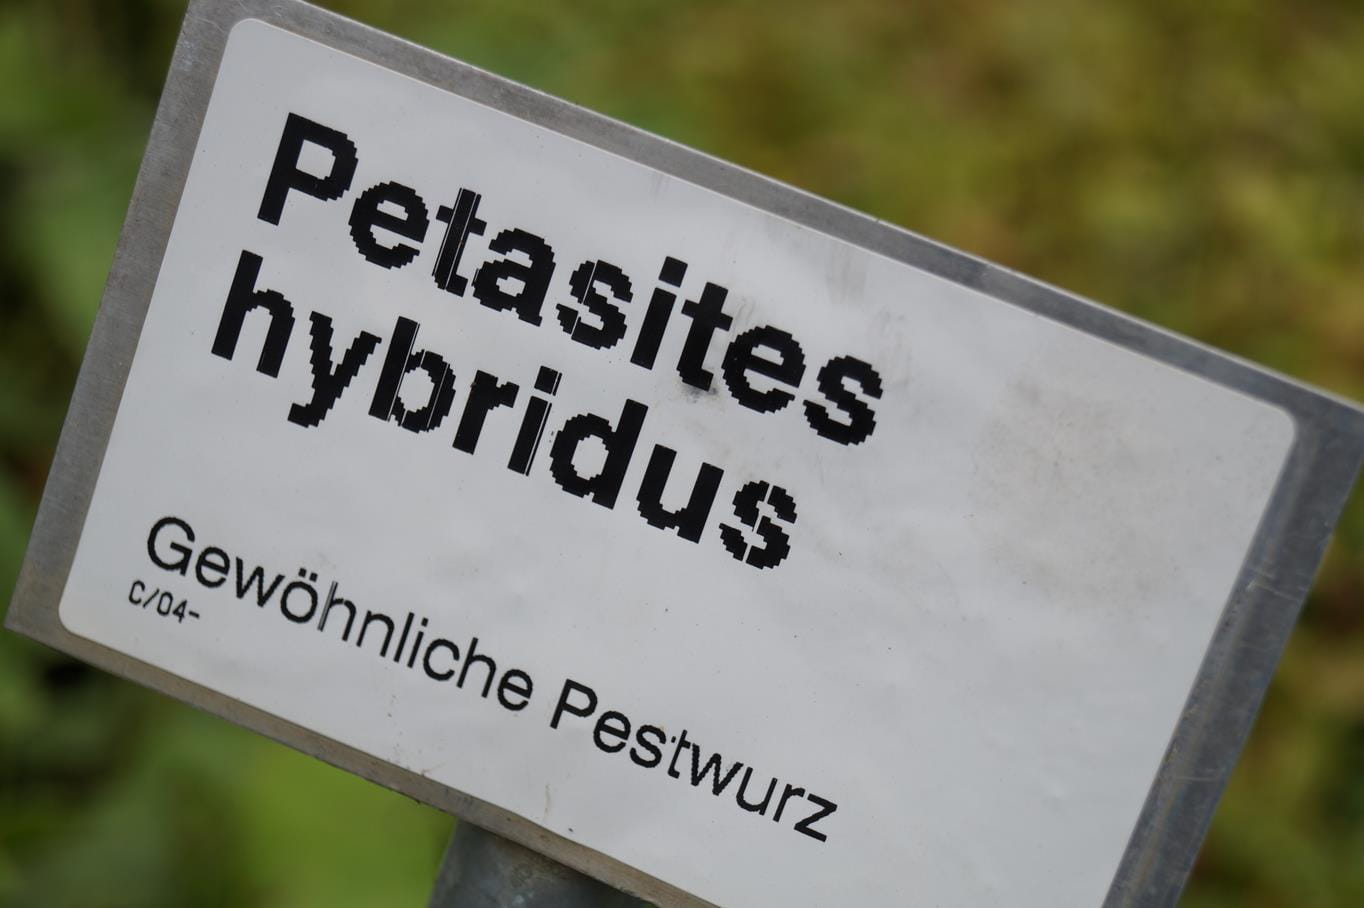 Gewöhnliche Pestwurz • Petasites hybridus Ansicht 2